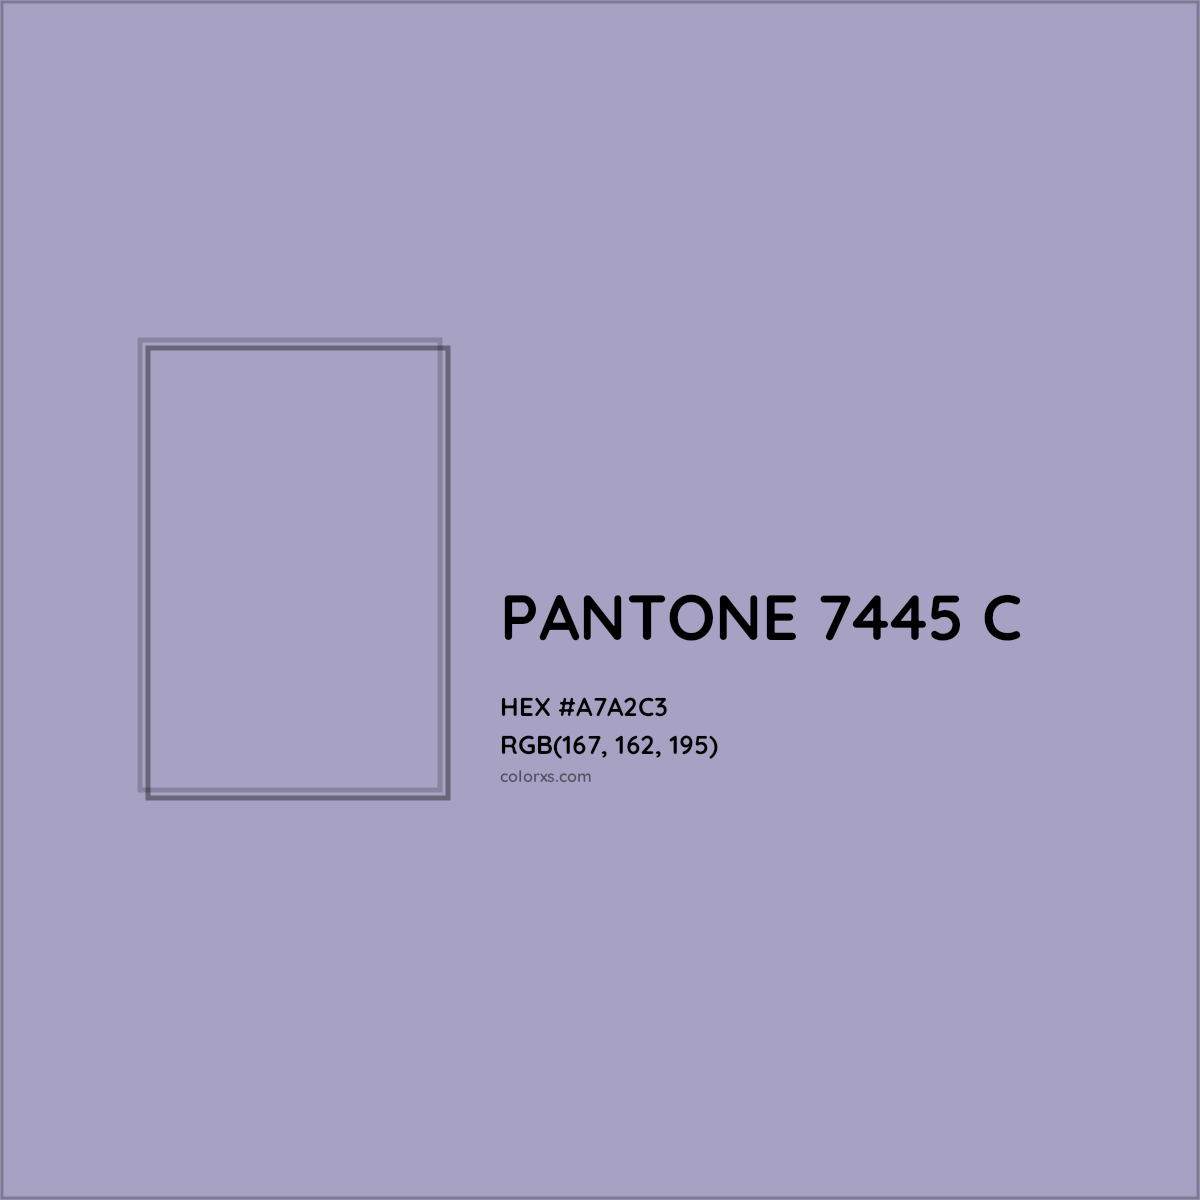 HEX #A7A2C3 PANTONE 7445 C CMS Pantone PMS - Color Code